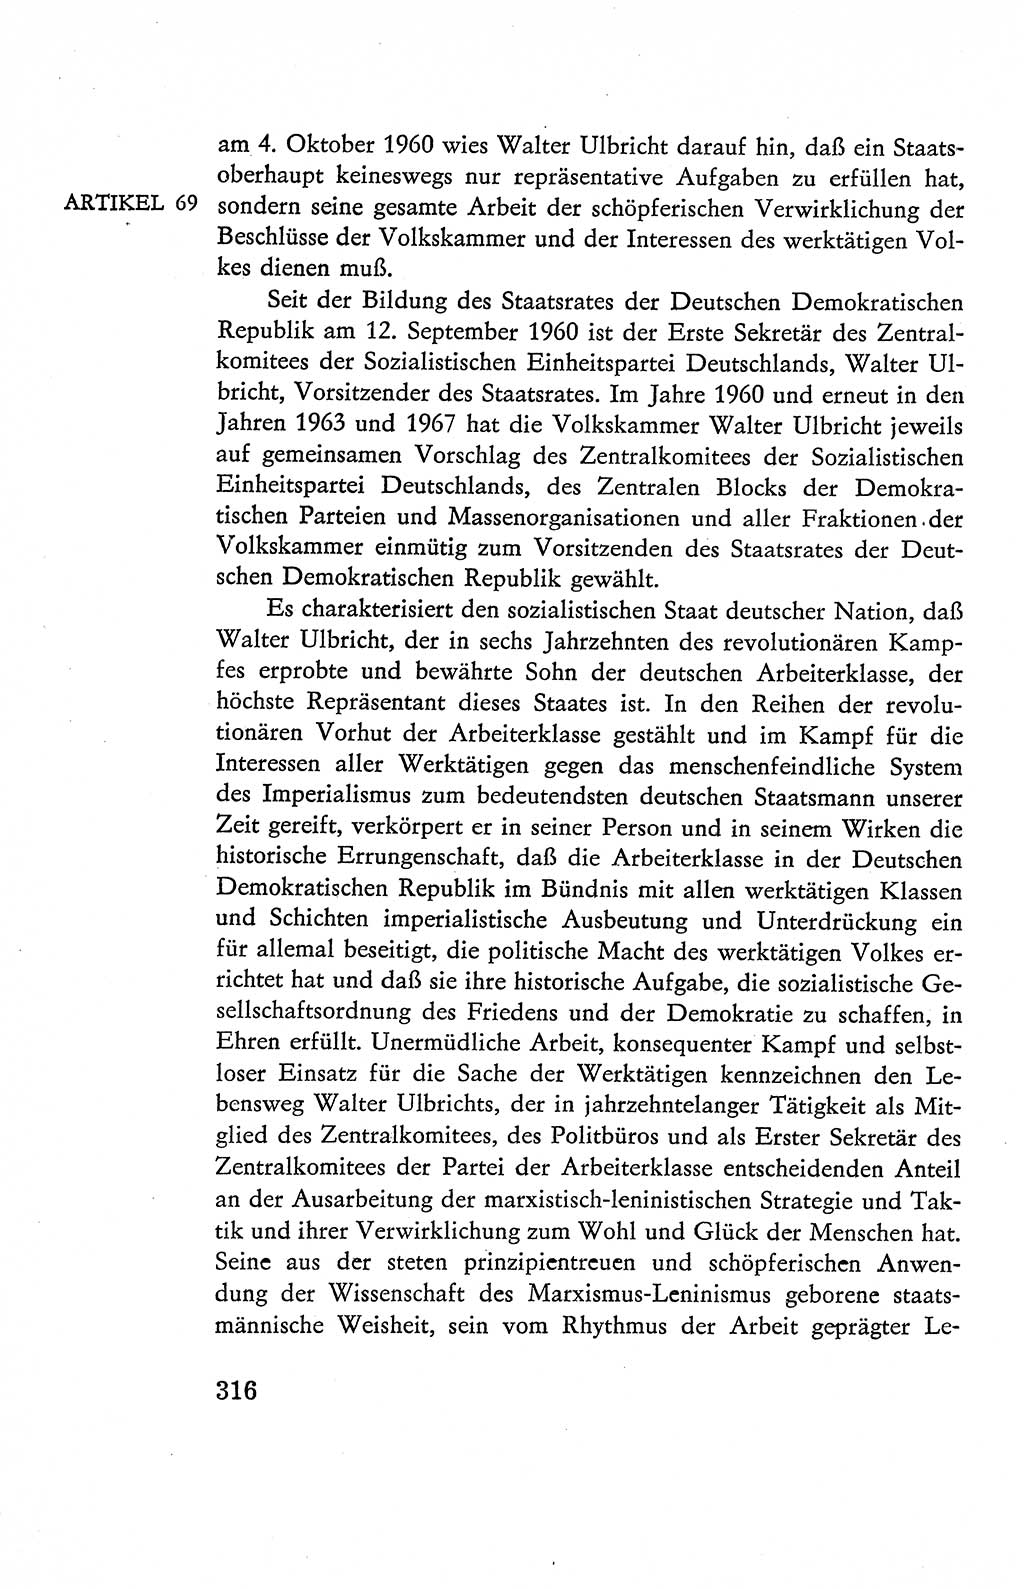 Verfassung der Deutschen Demokratischen Republik (DDR), Dokumente, Kommentar 1969, Band 2, Seite 316 (Verf. DDR Dok. Komm. 1969, Bd. 2, S. 316)